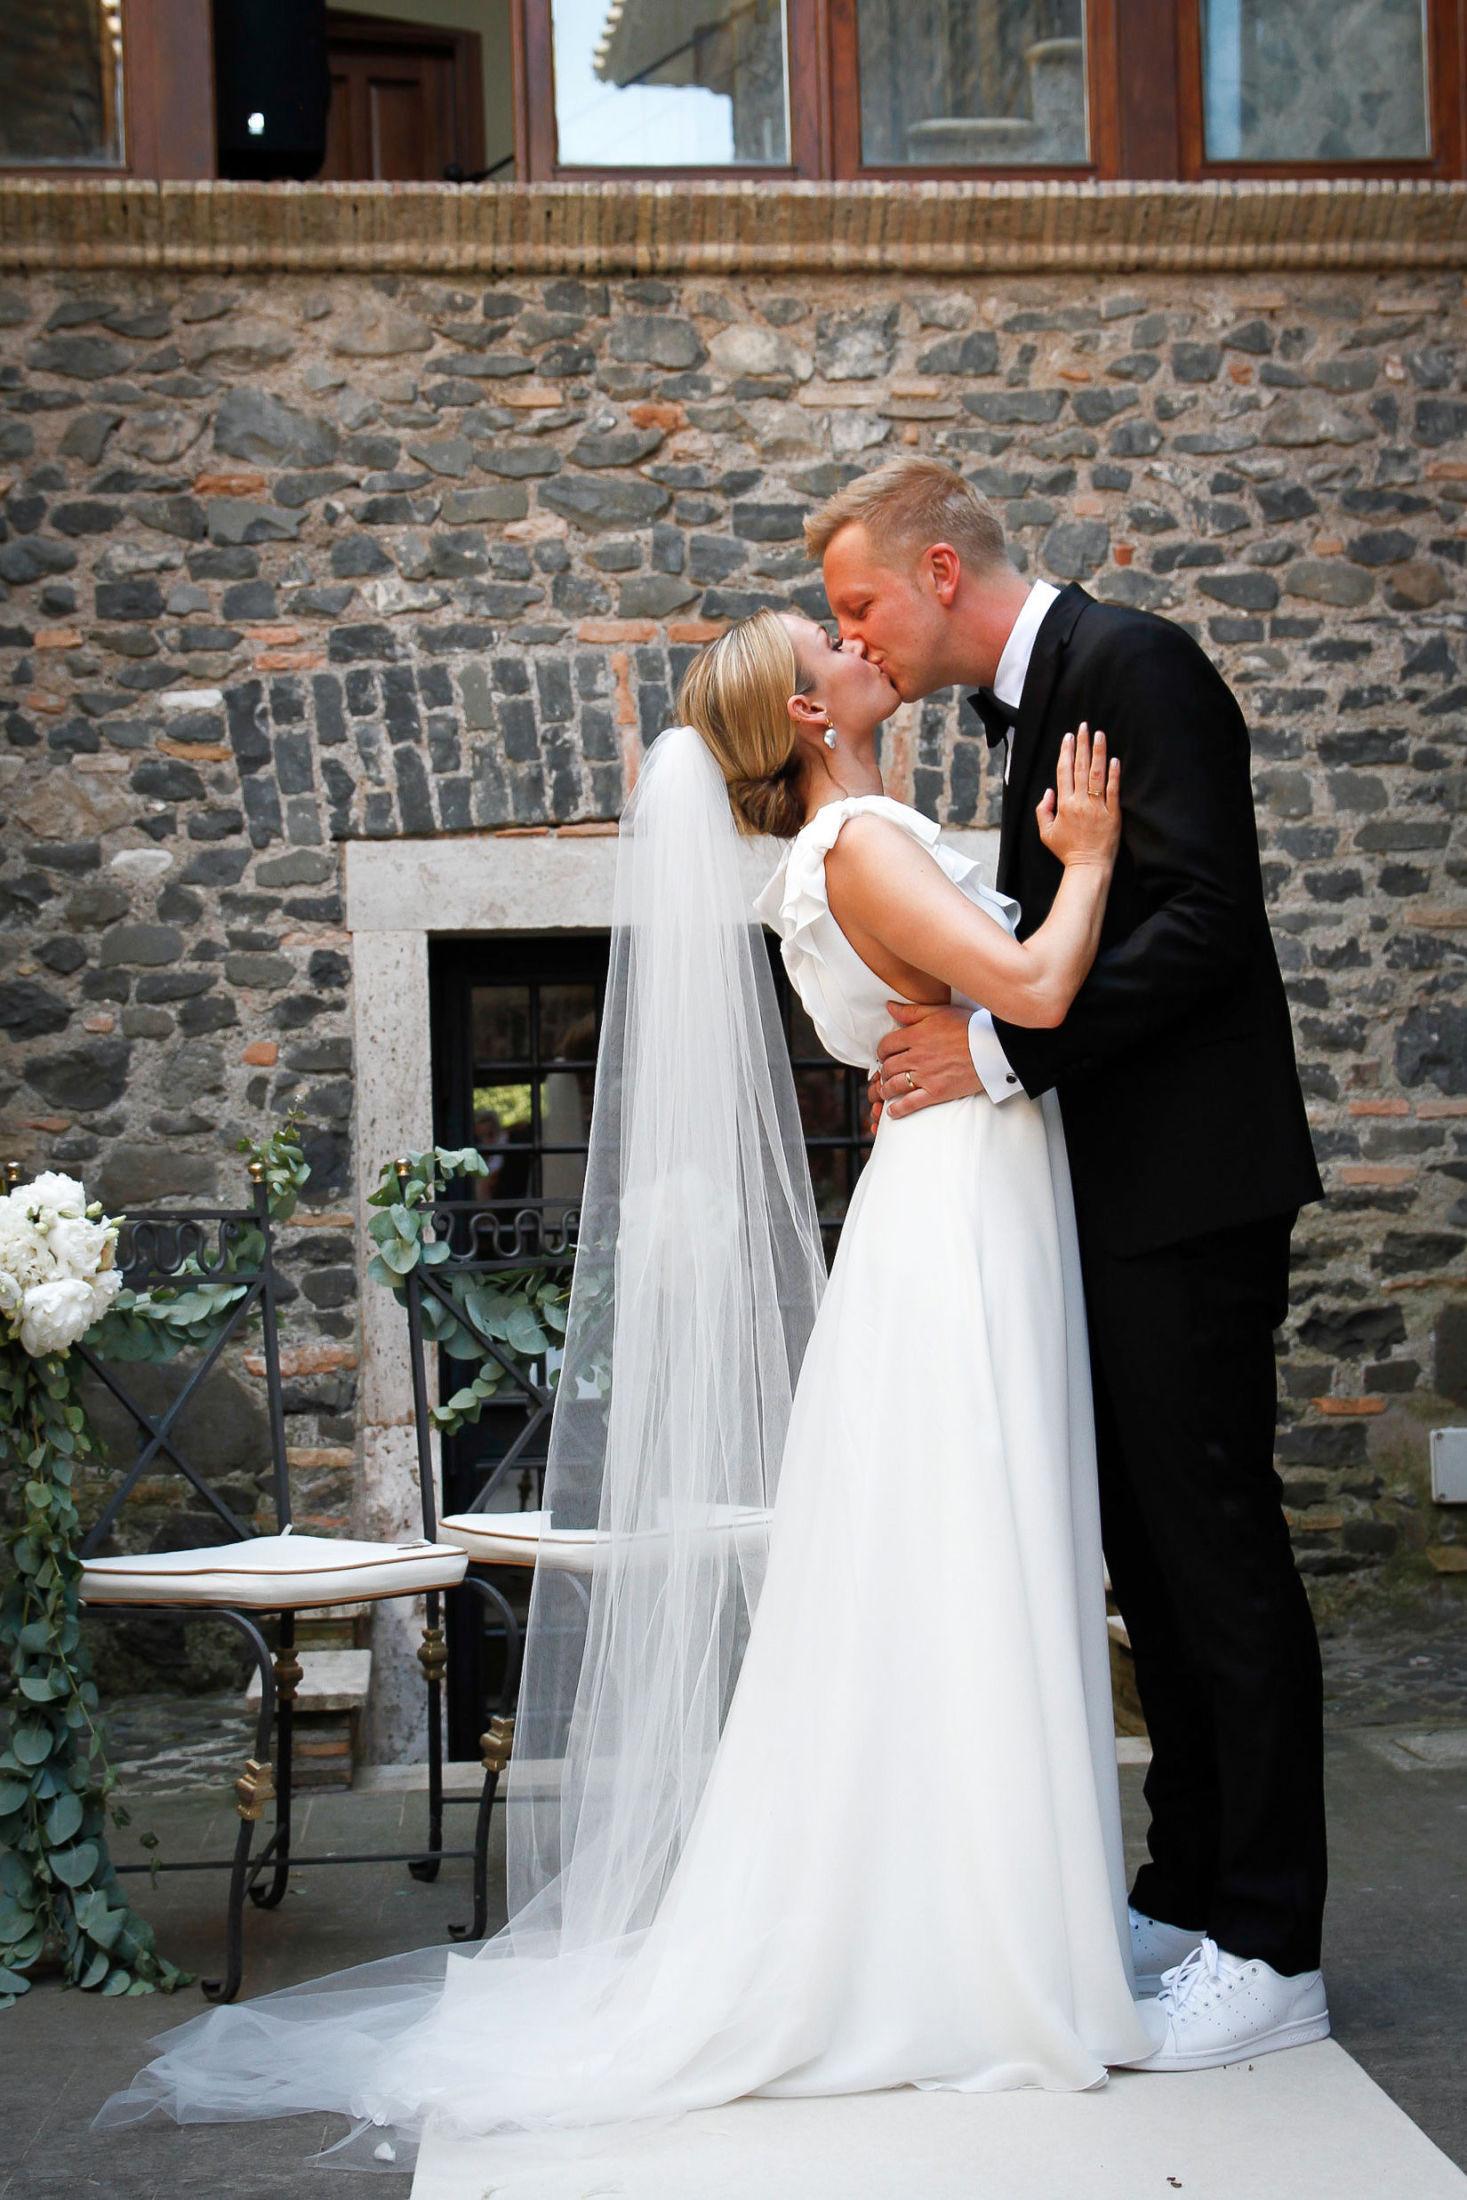 STOR DAG: Katrine og Fridtjof er strålende fornøyde etter bryllupet, og de fikk drømmedagen de ønsket seg. Foto: Privat.